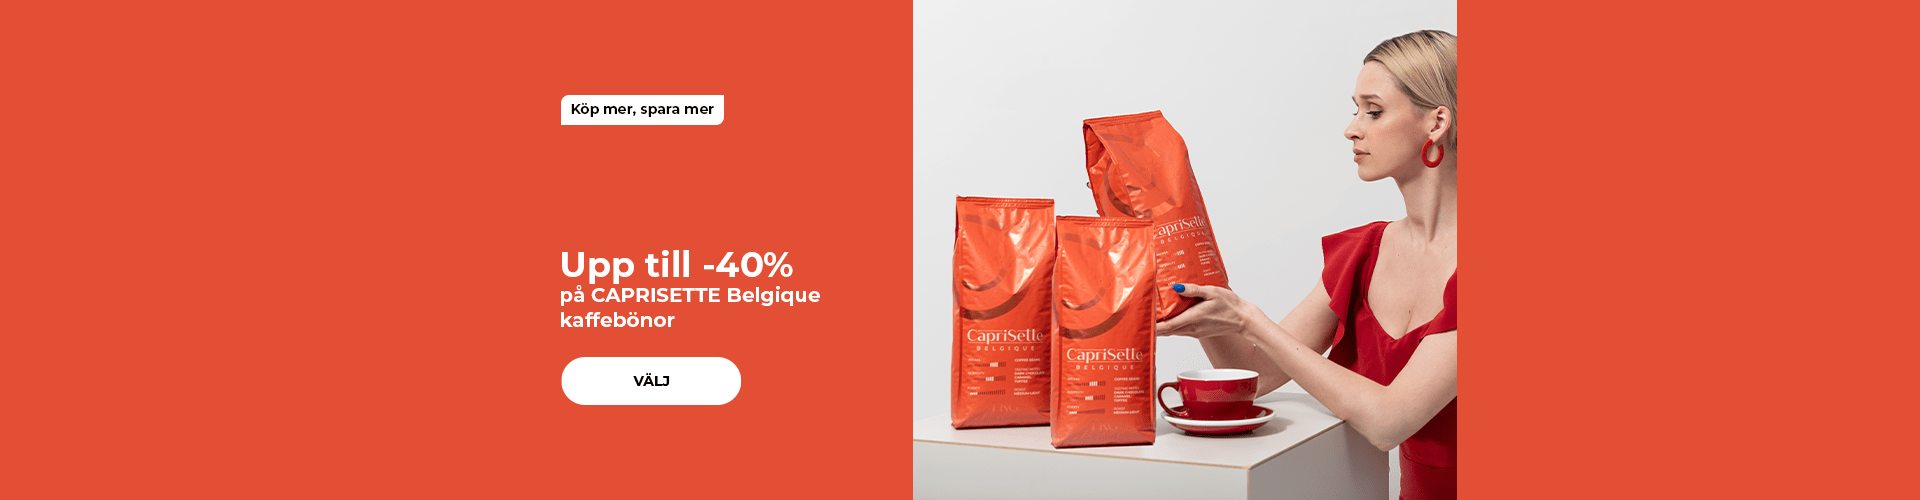 Upp till -40% på CAPRISETTE Belgique kaffebönor